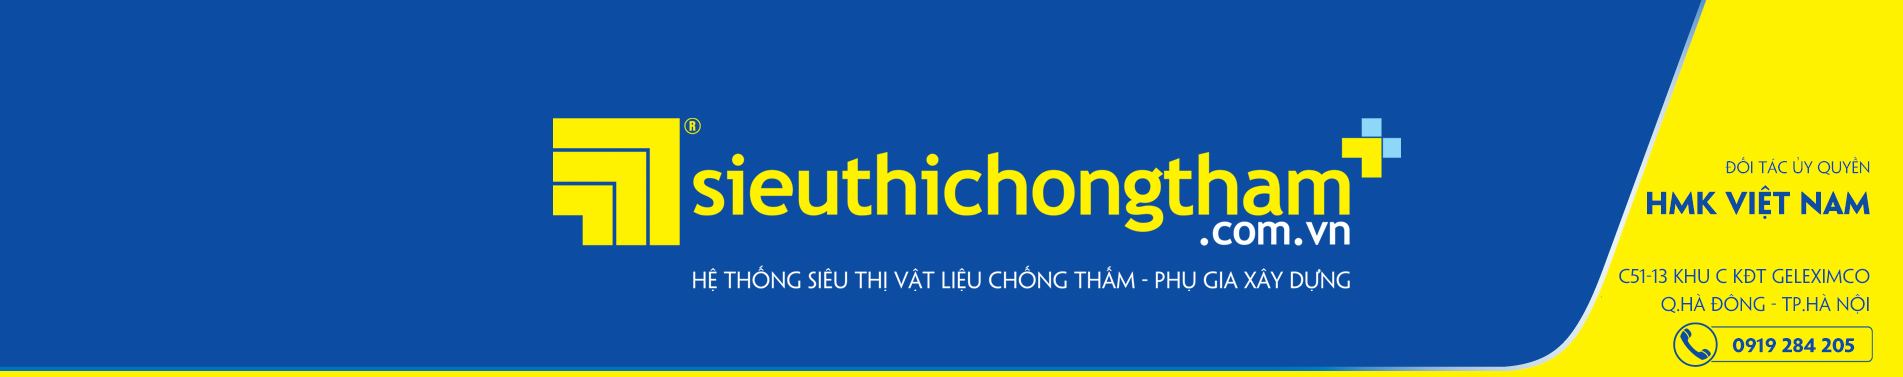 HMK Viet Nam Banner